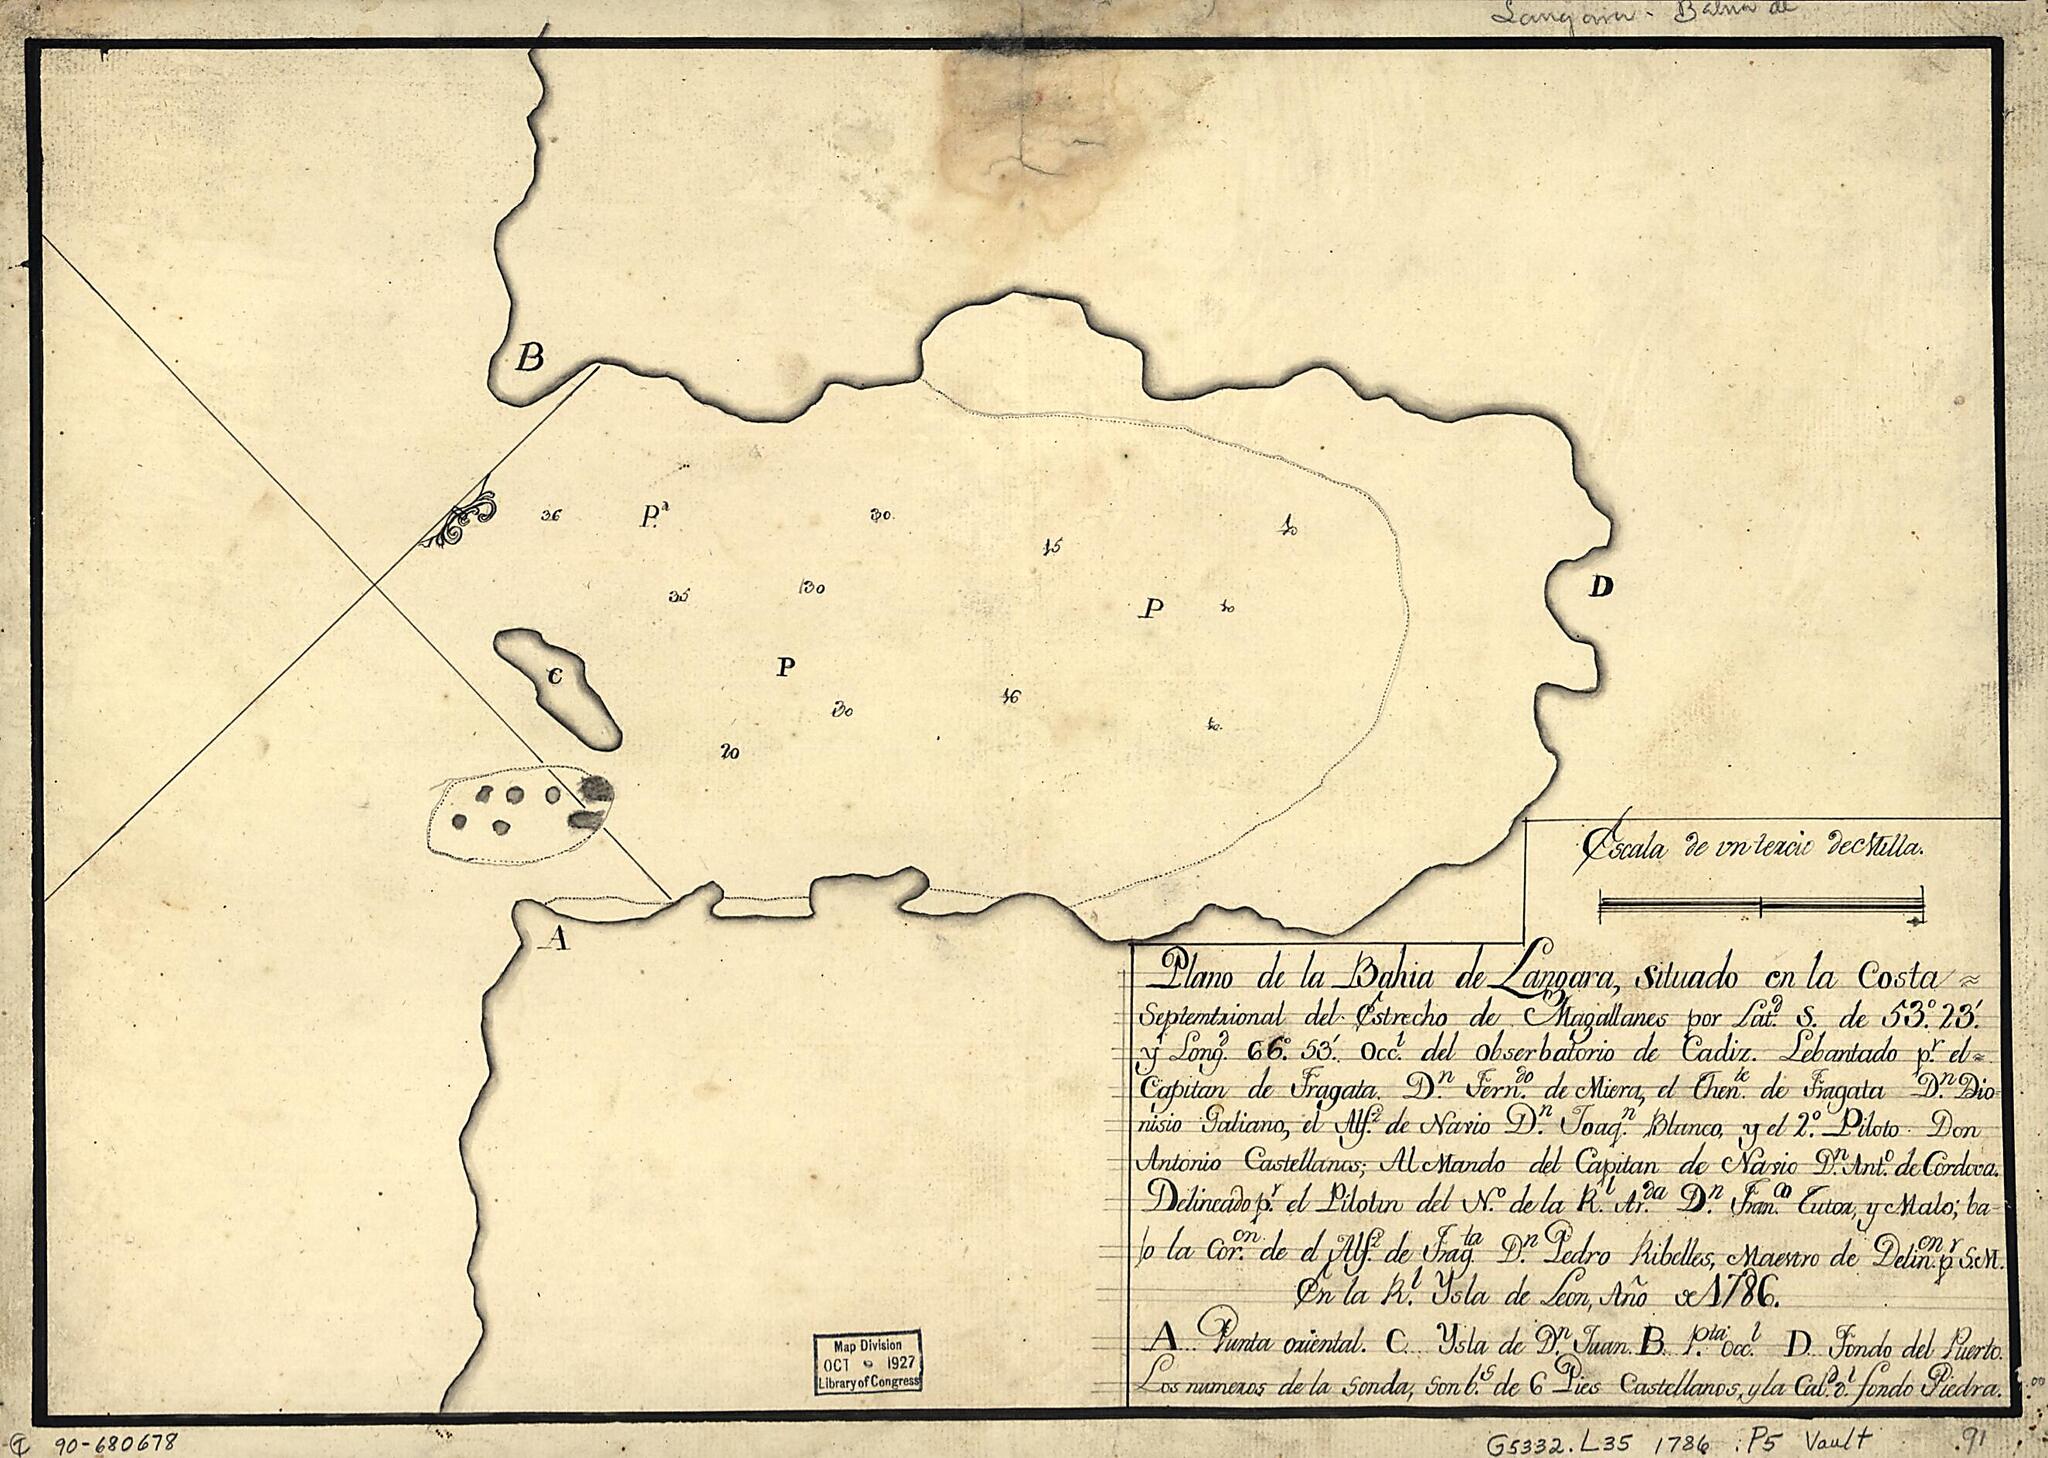 This old map of Plano De La Bahía De Lángara Situado En La Costa Septemtrional Del Estrecho De Magallanes Por Latd. S. De 53⁰23ʹ Y Longd. 66⁰53ʹ Occl. Del Obserbatorio De Cádiz from 1786 was created by Fernando De Miera, Francisco Tutor Y Malo i